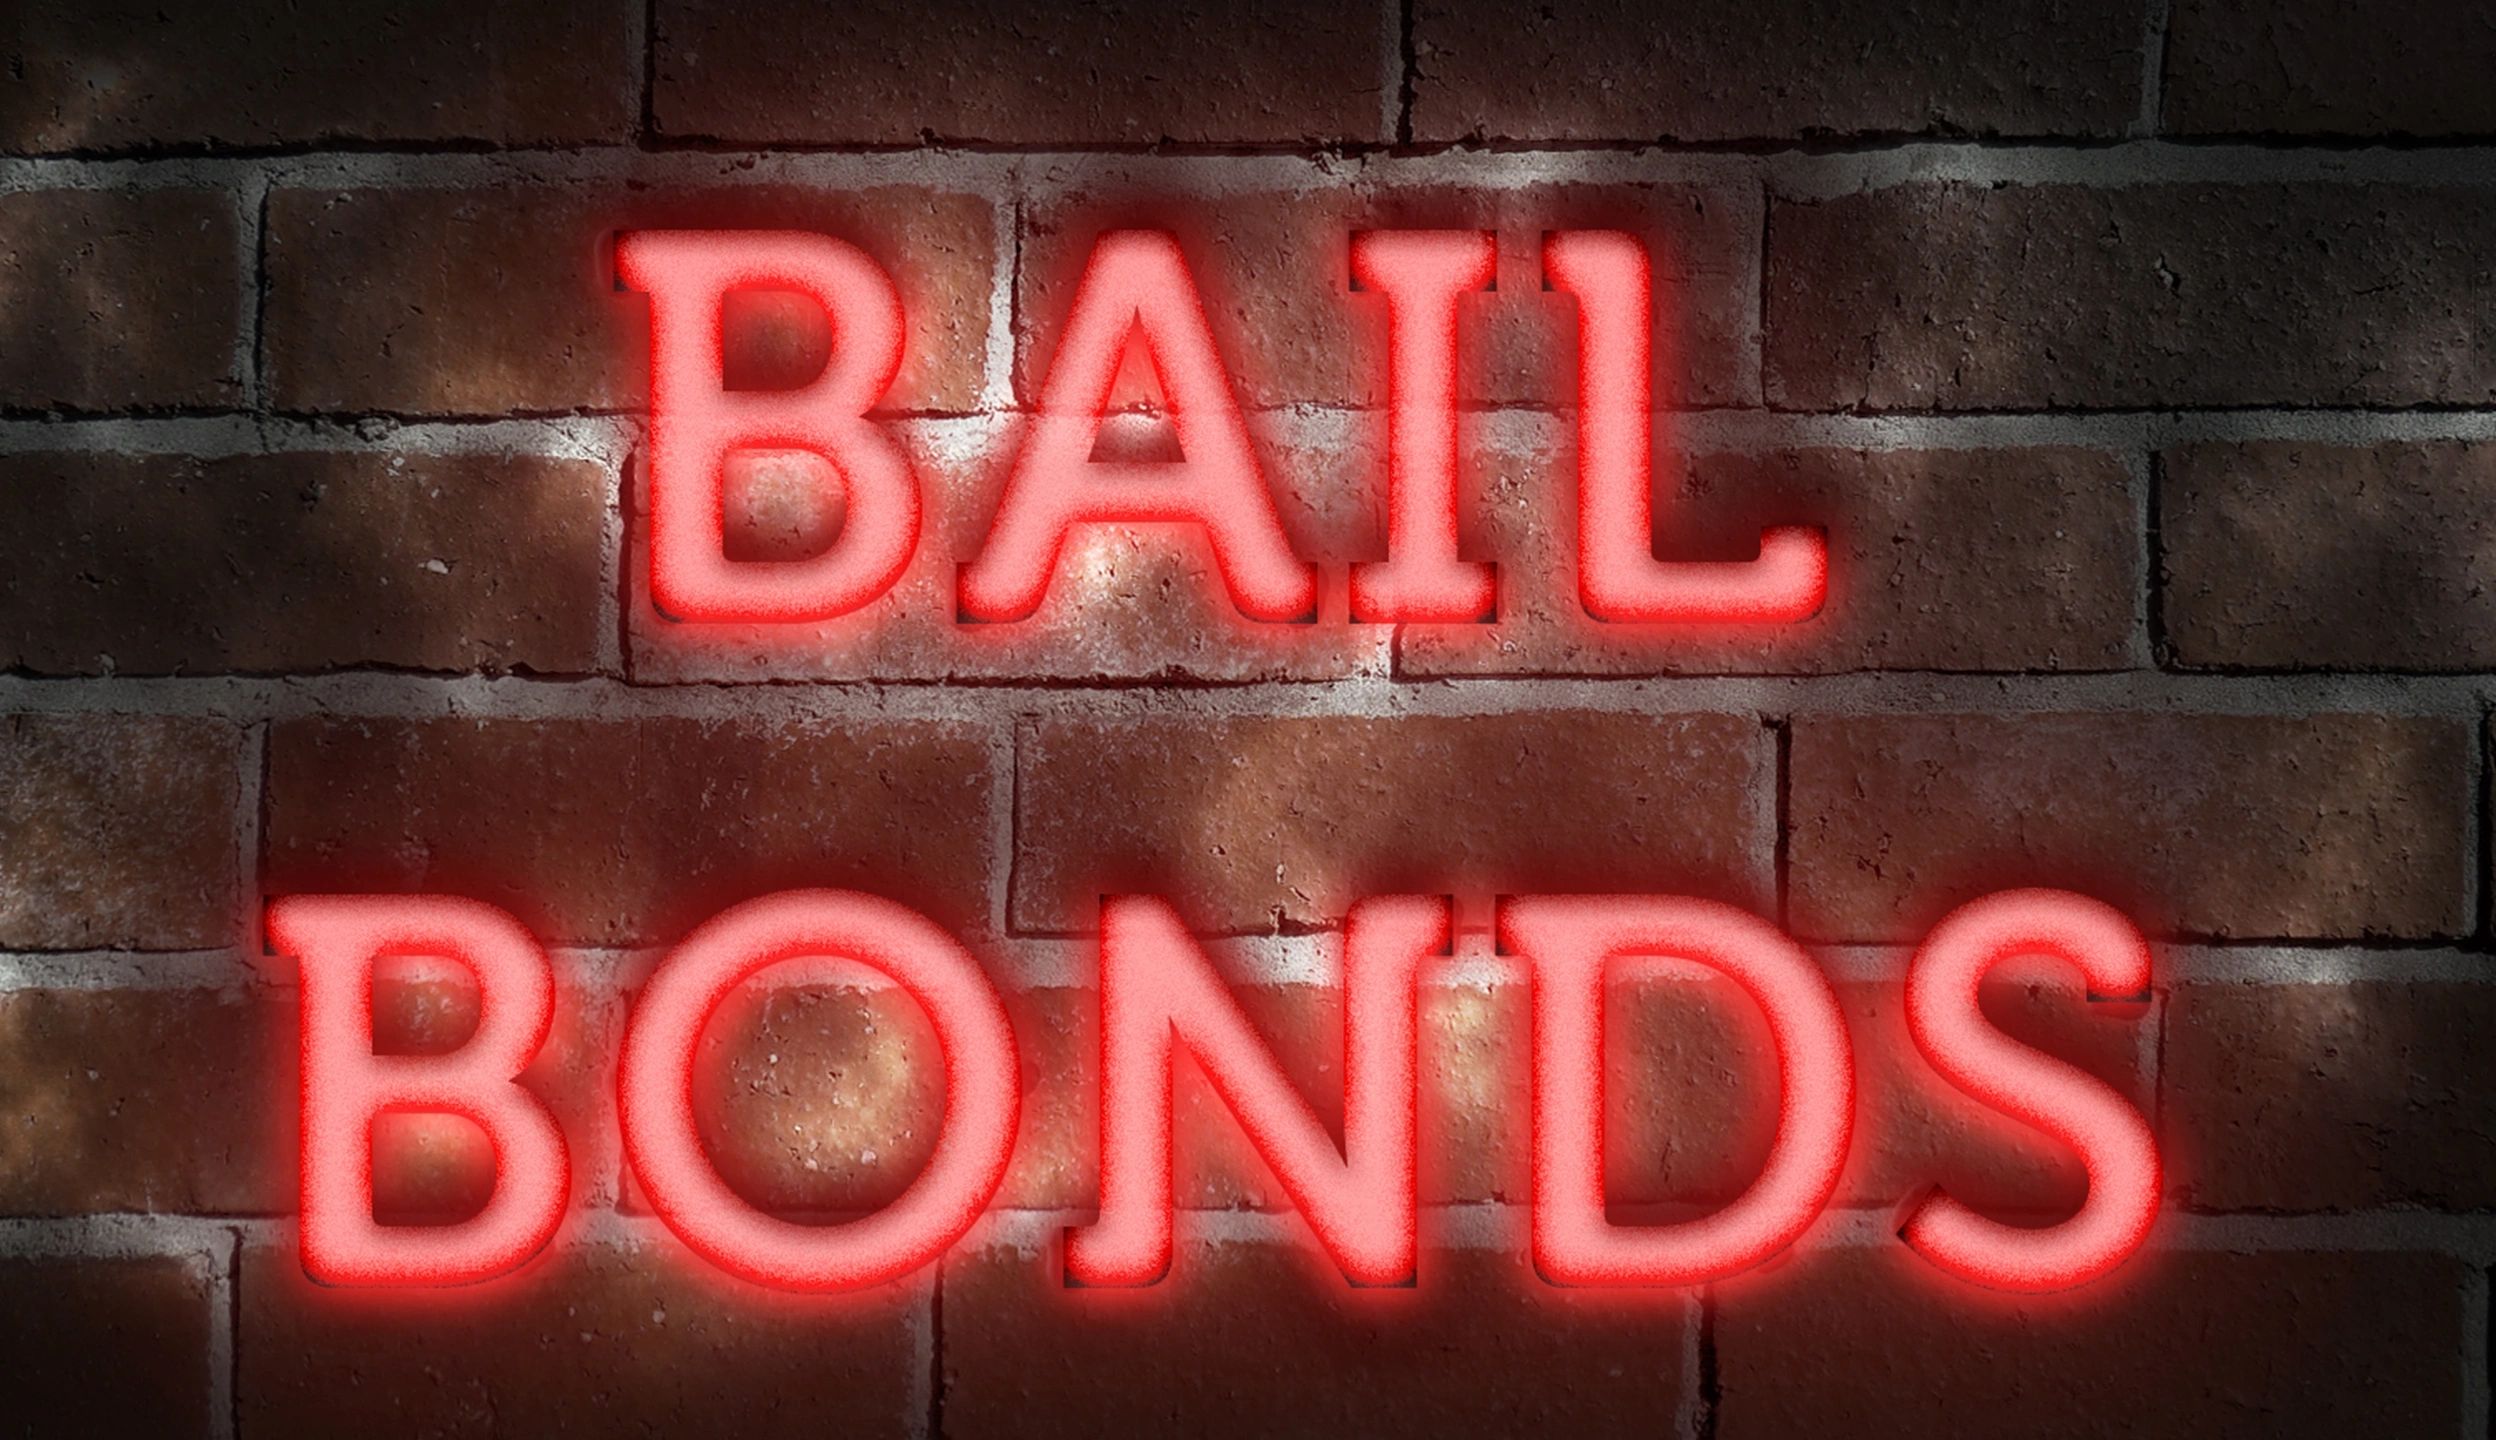 Florida Bail Bonds